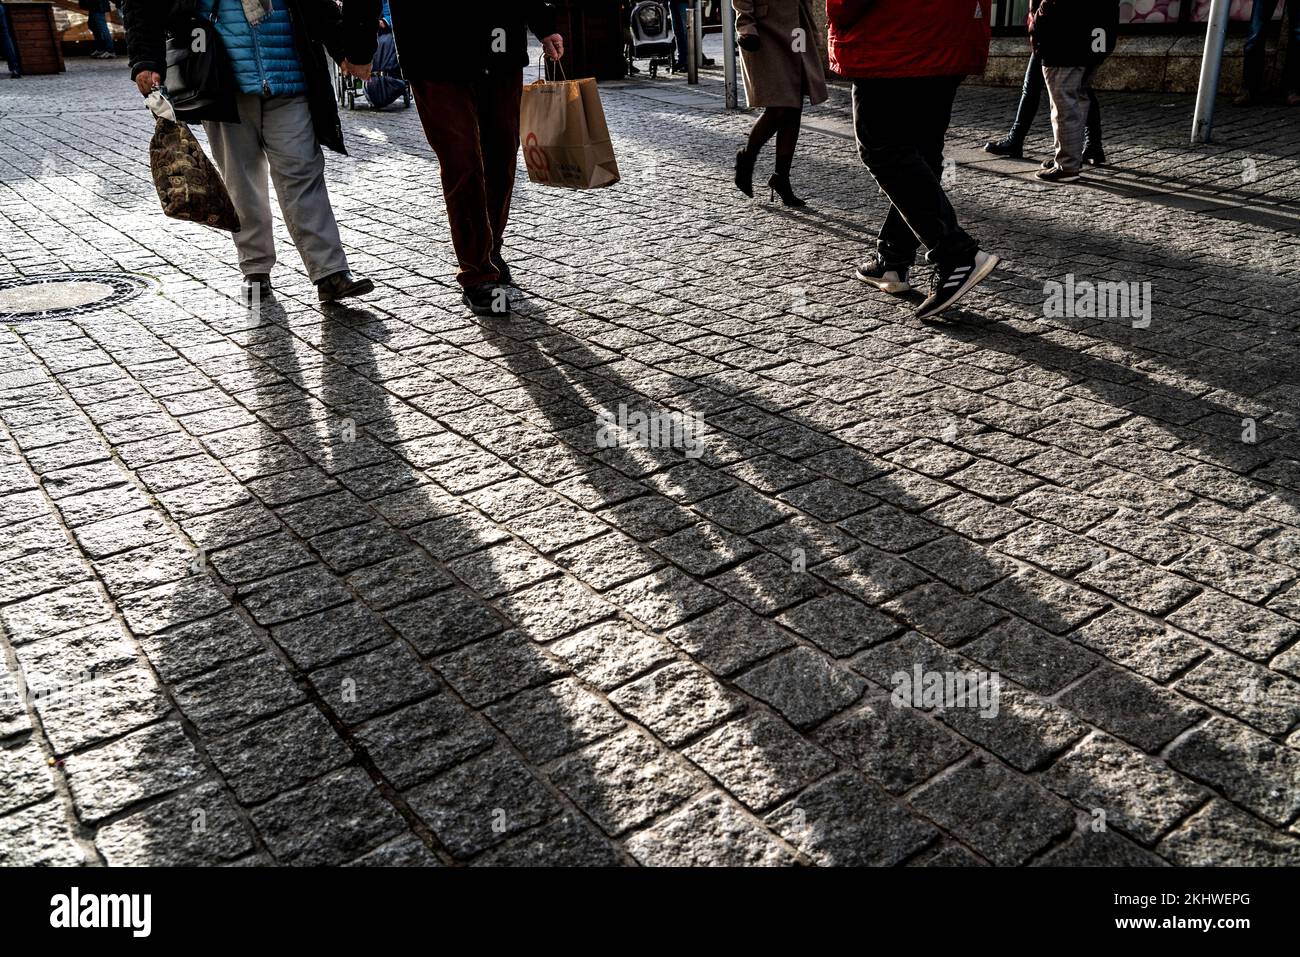 Pedestrians in a pedestrian zone, winter, long shadows, Dortmund, NRW, Germany, Pedestrians in a pedestrian zone, winter, long shadows, Dortmund, NRW, Stock Photo